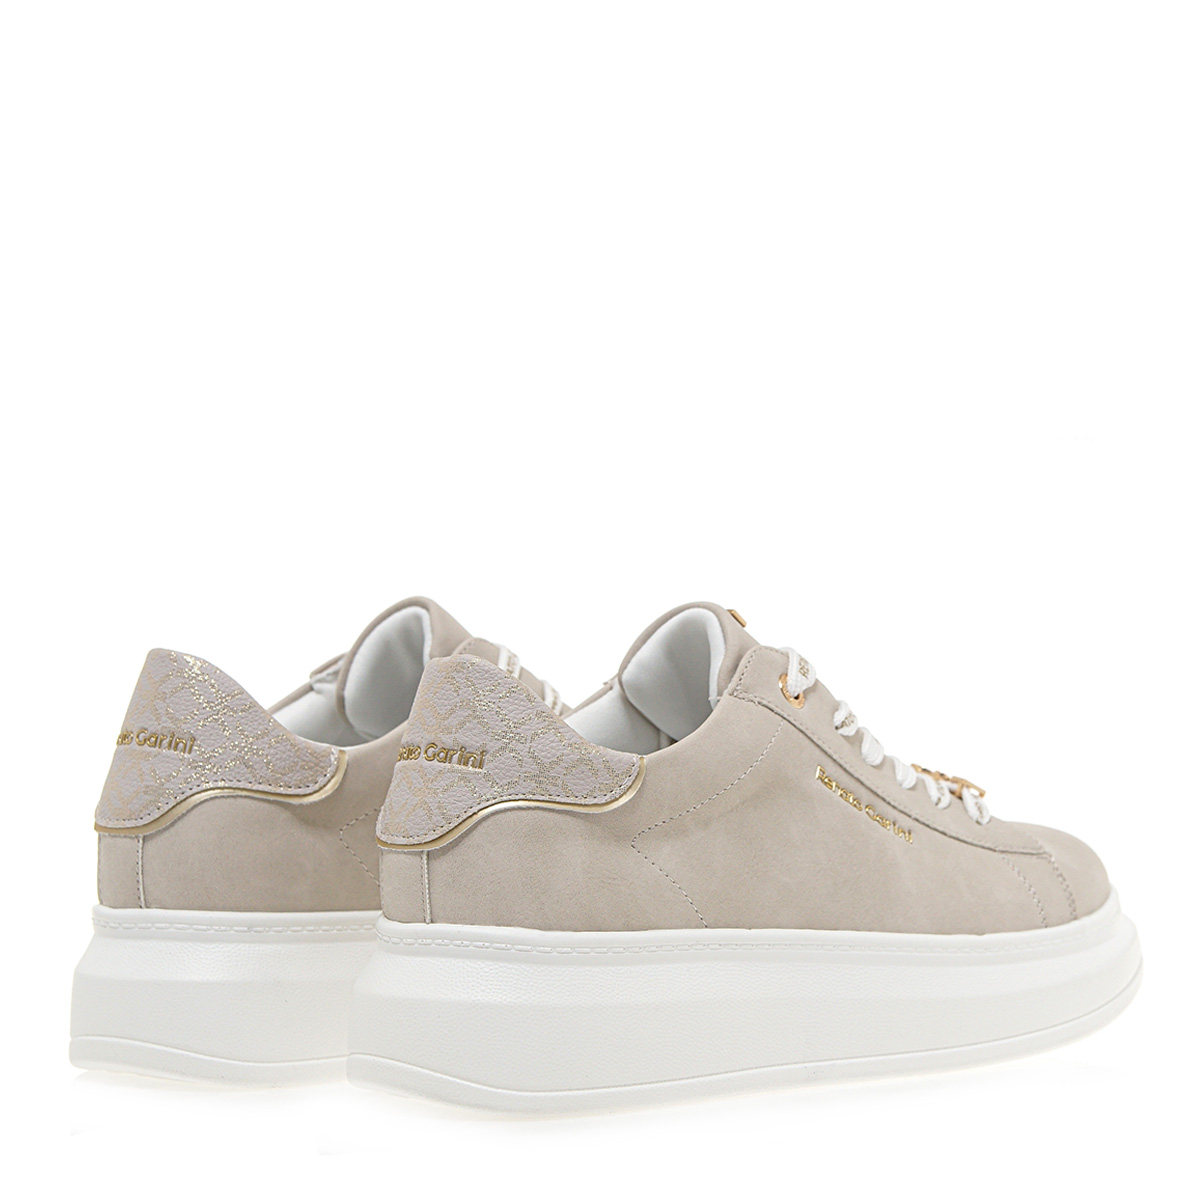 Γυναικείο Sneaker σε off white χρώμα Renato Garini S119R16620Α7